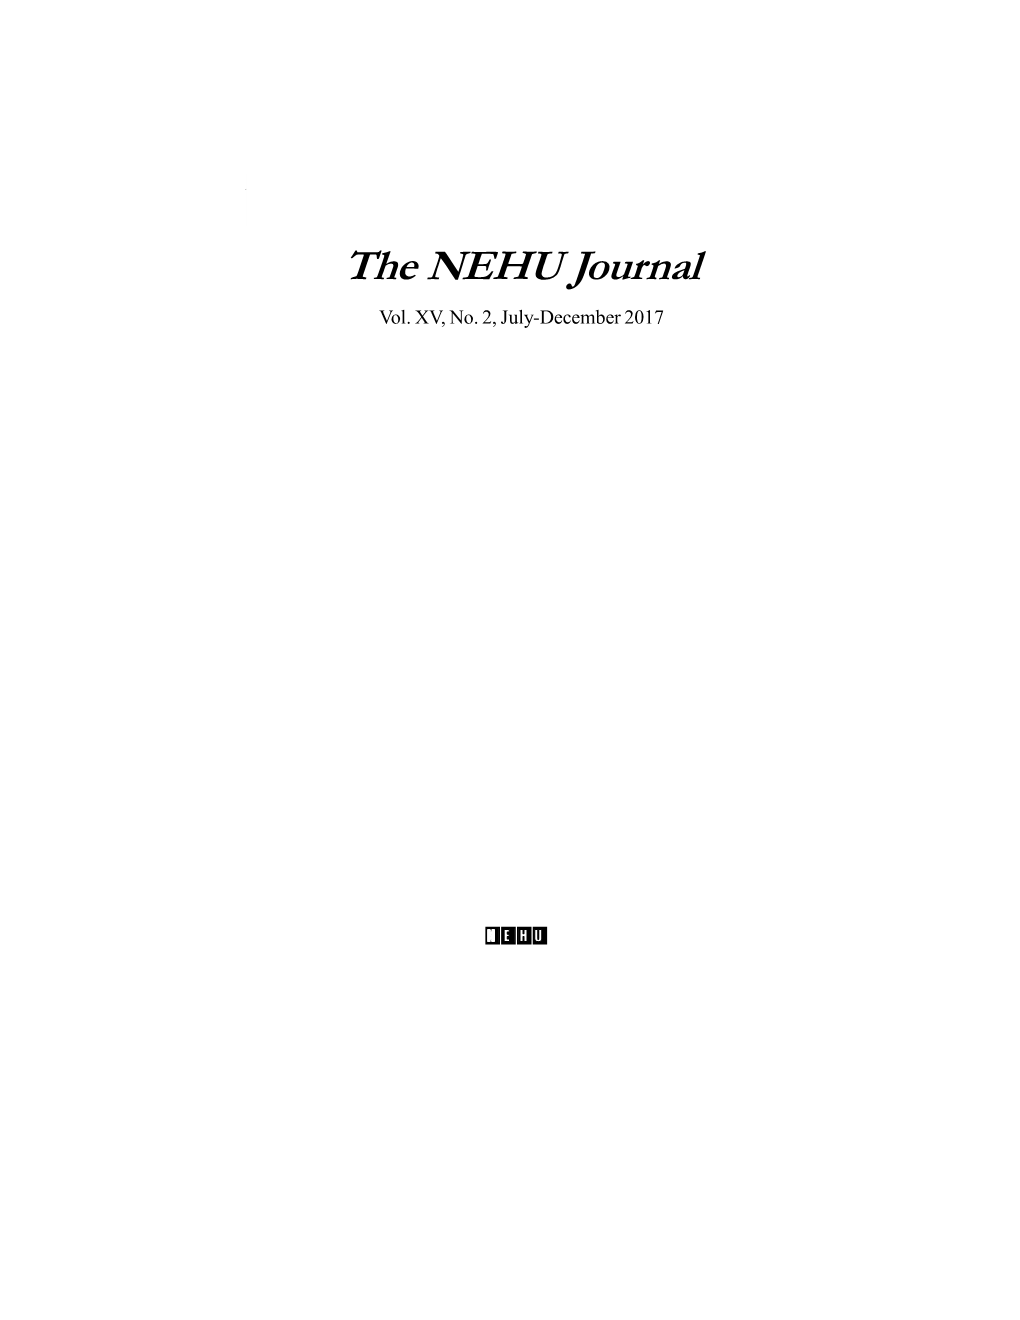 The NEHU Journal, Vol XV, No